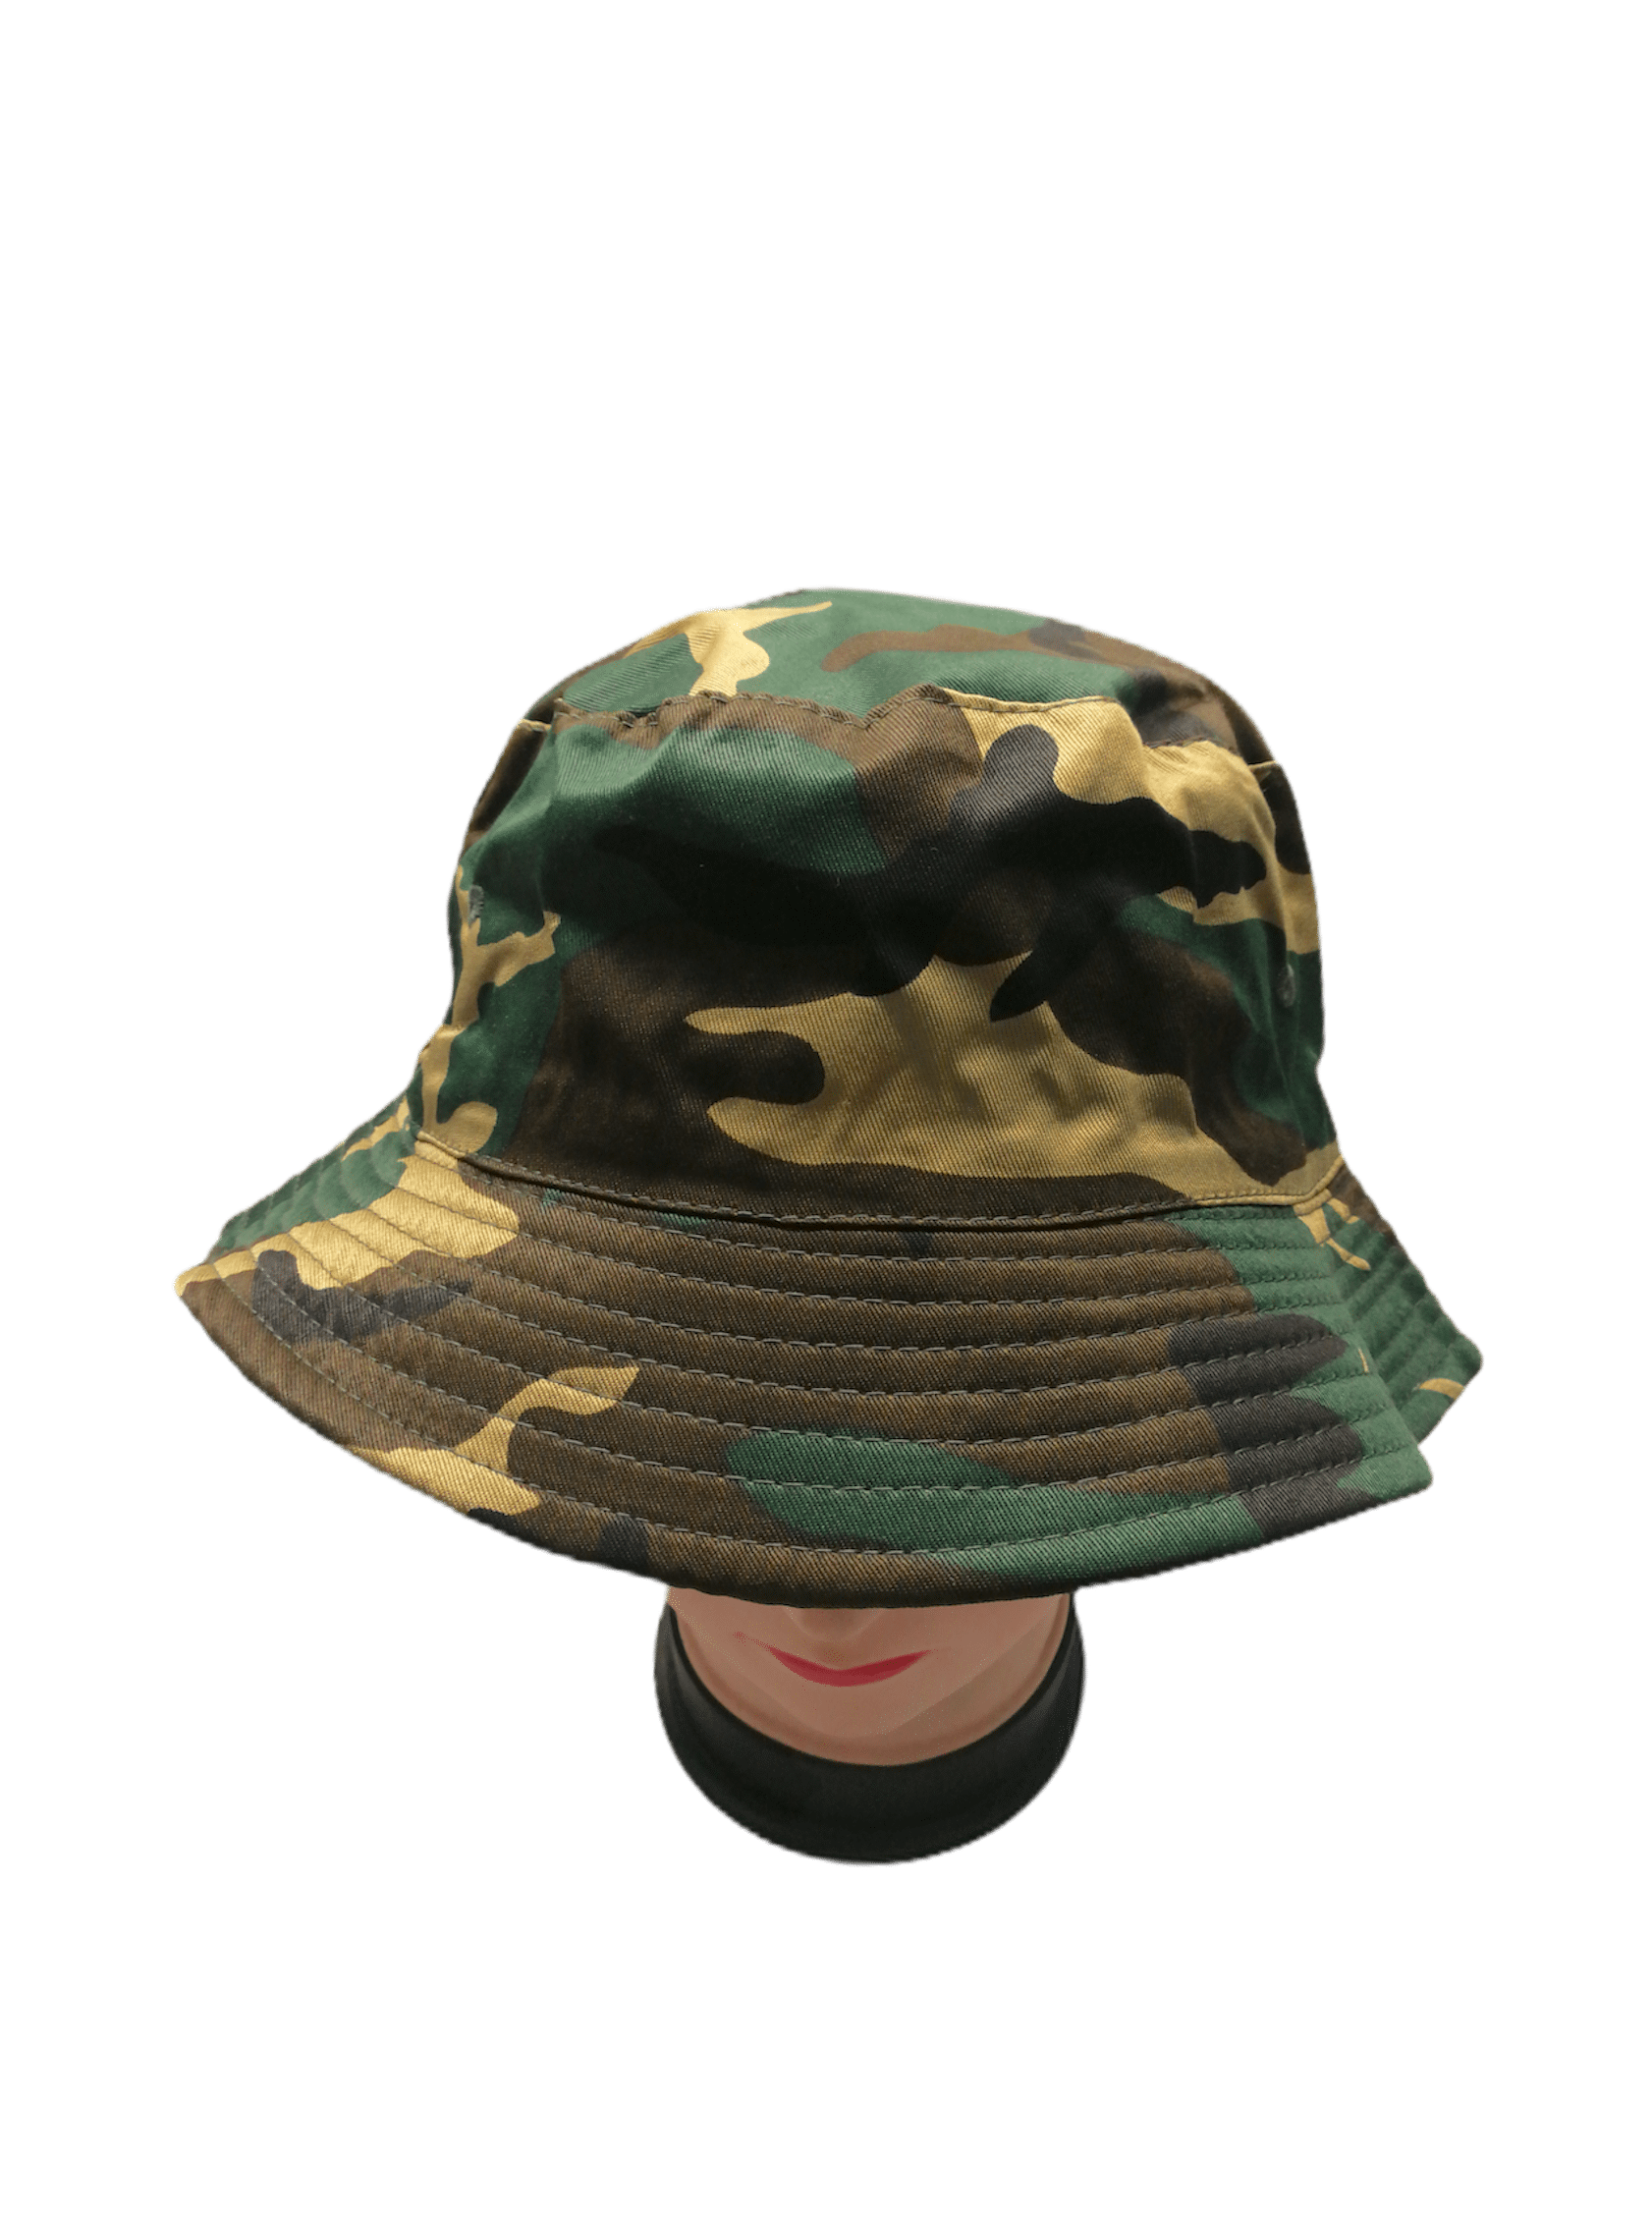 Chapeaux bob réversible motif militaire       (x6) 3,00€/unité | Grossiste-pro